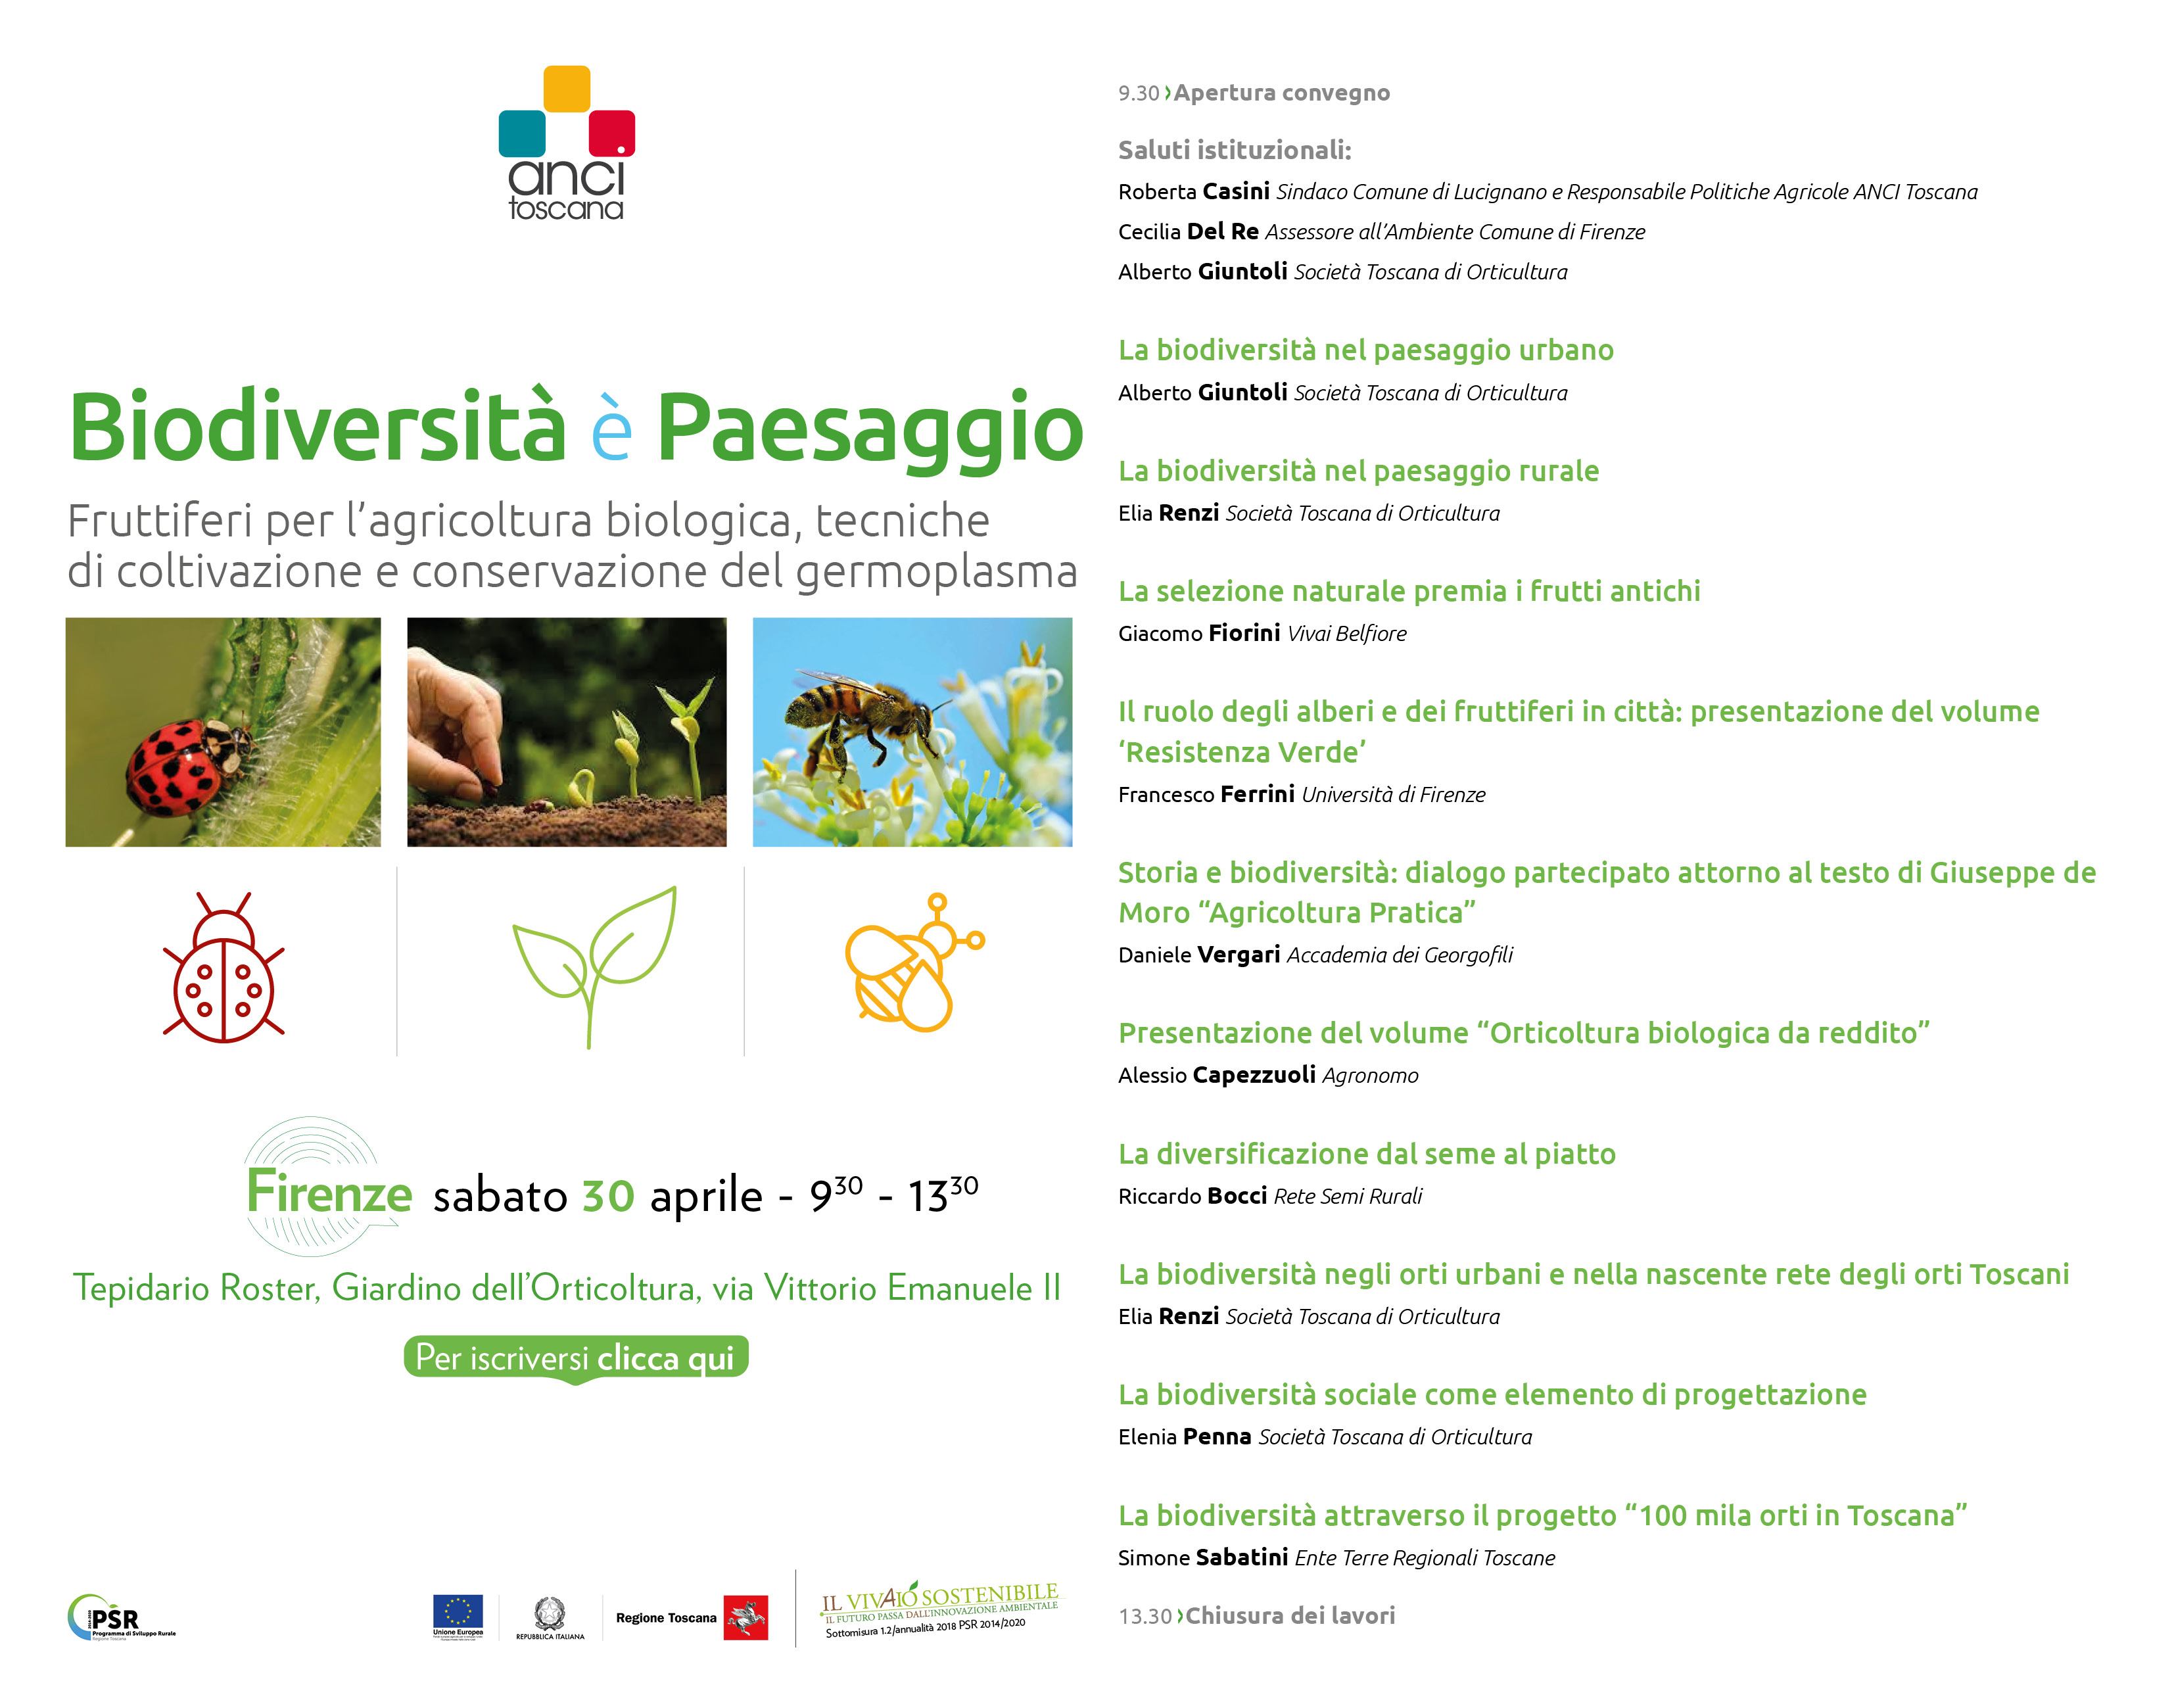 Biodiversità e paesaggio, programma